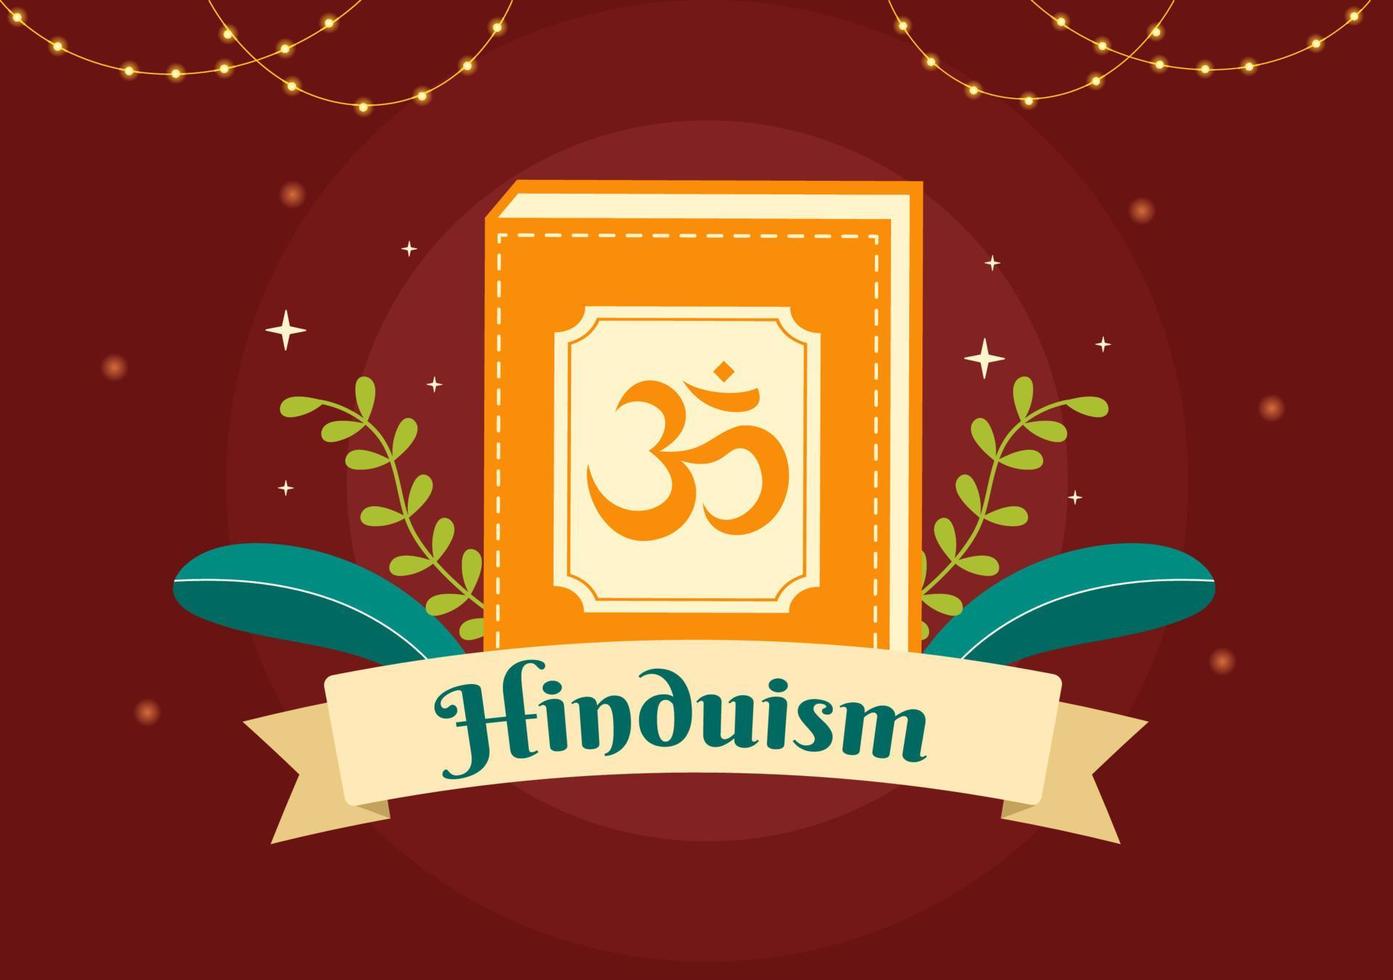 símbolo del hinduismo fondo plano dibujos animados dibujados a mano plantillas ilustración vector